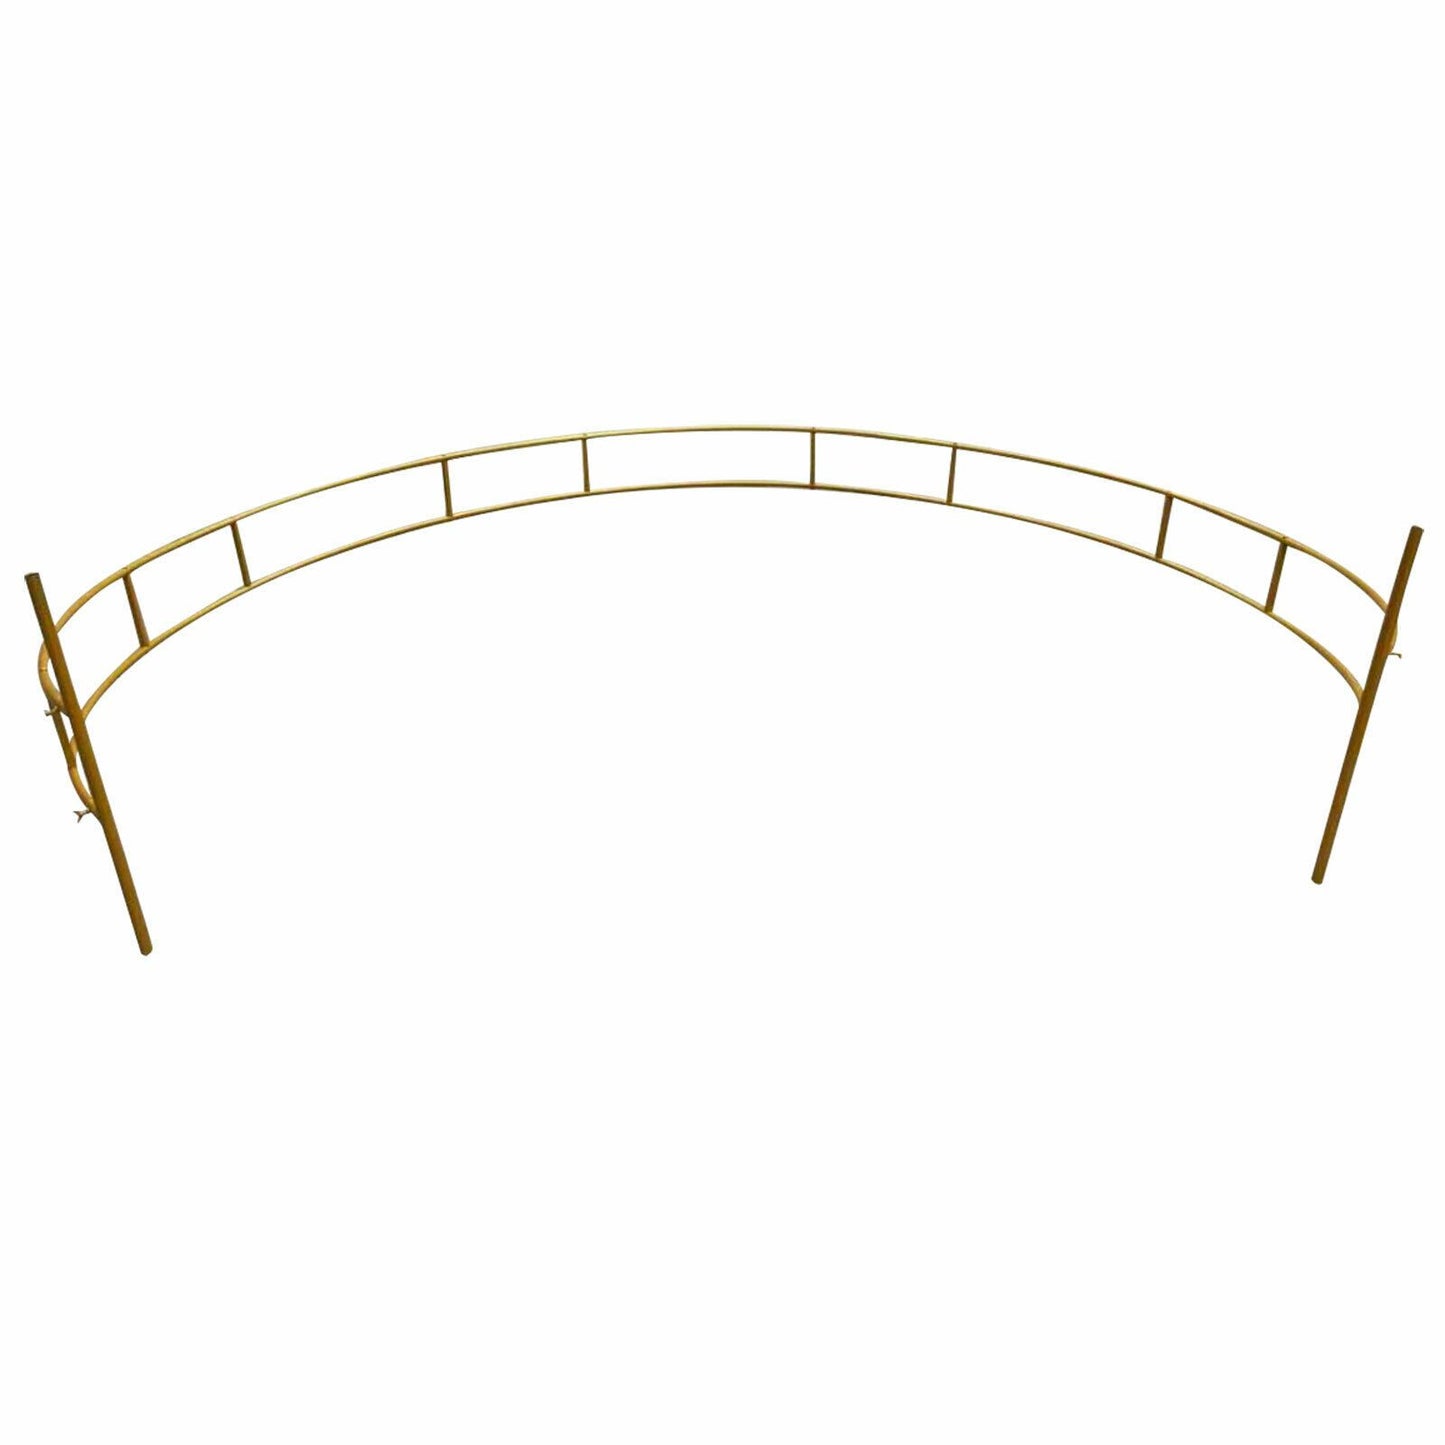 Golden Rustic Round Circle Wedding Arch Trellis 7.5' - Westfield Retailers